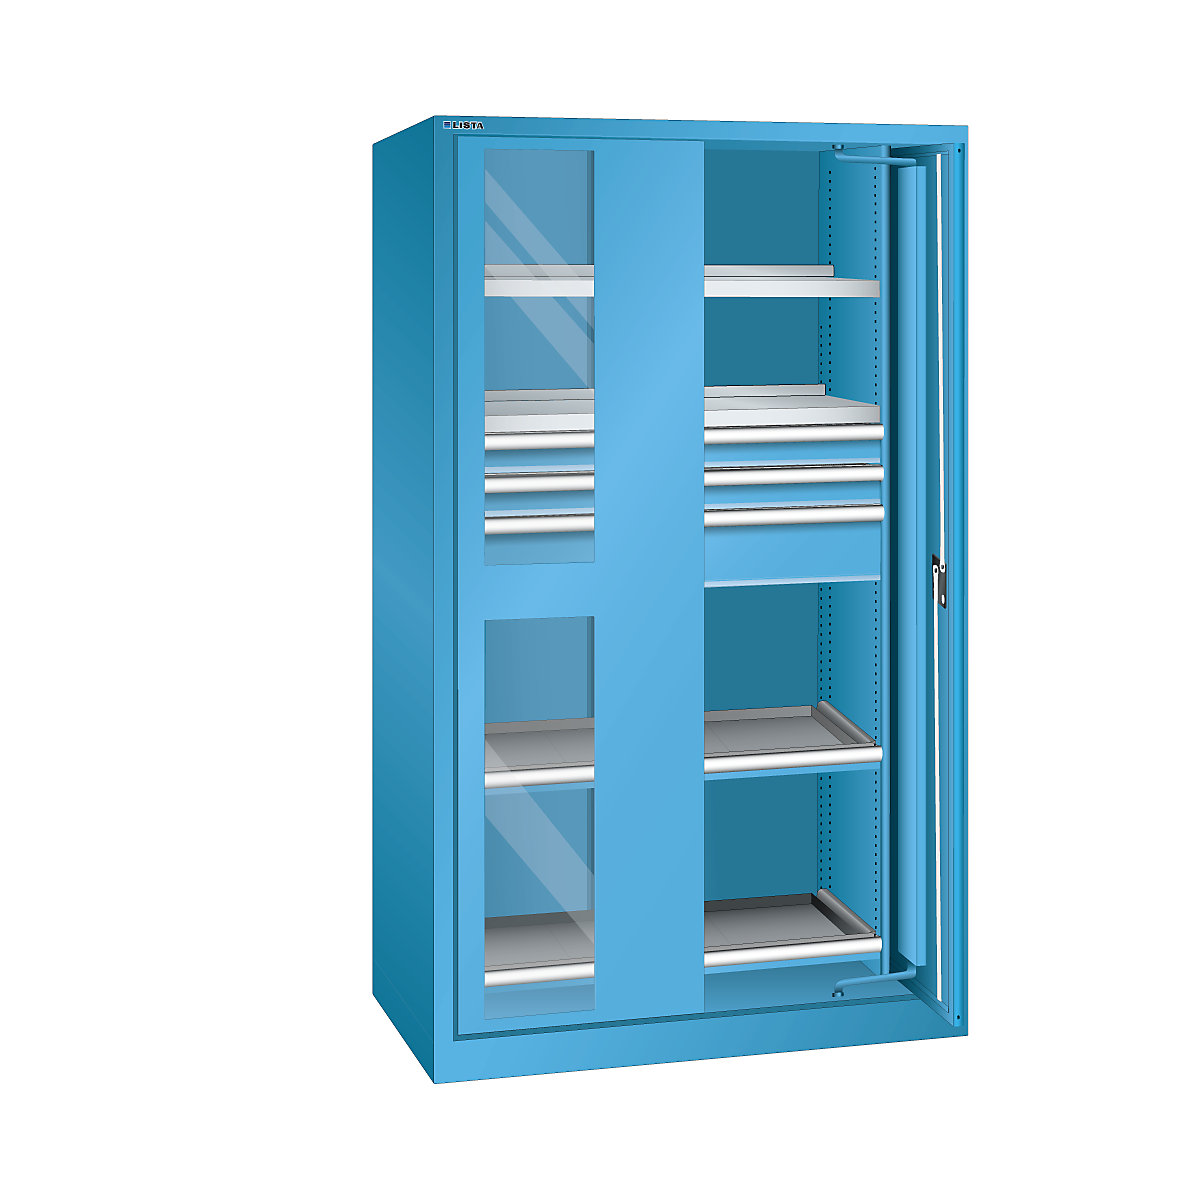 Zwaarlastkast met inschuifdeuren – LISTA, 3 laden, 4 legborden, met vensterdeuren, lichtblauw-8